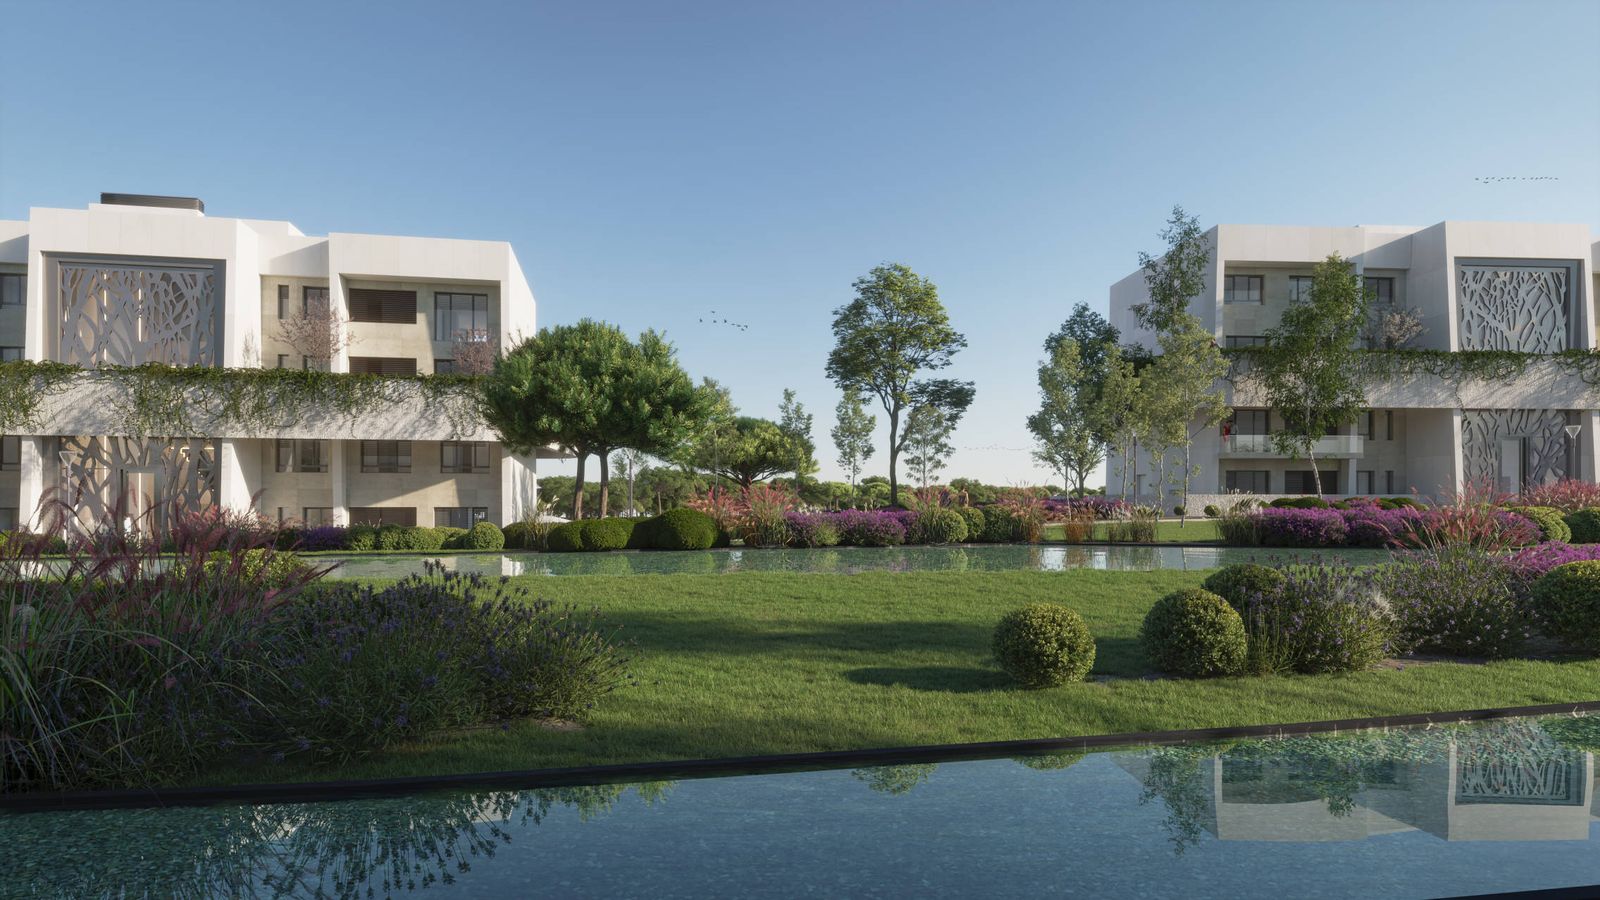 Los dueños de La Finca venderán pisos de lujo desde 380.000€ y construirán a pulmón thumbnail